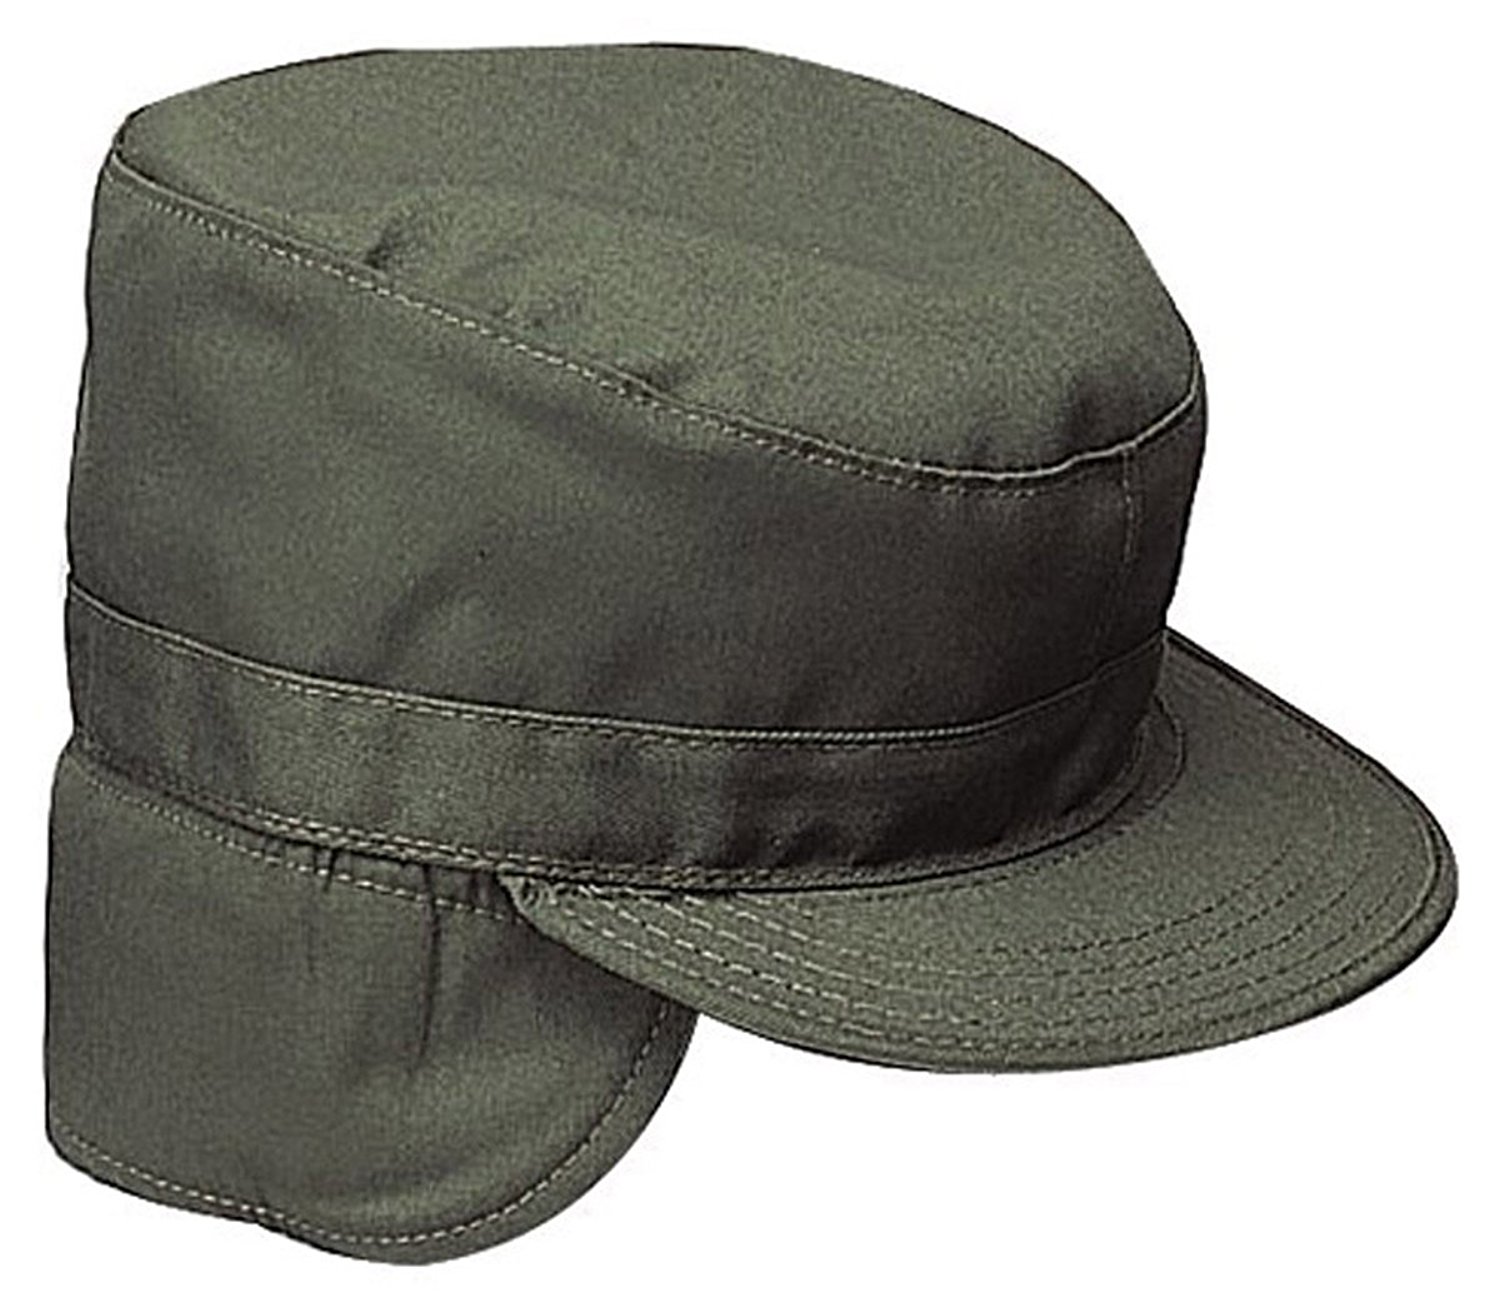 Amazon.com: Military Combat Caps - Olive Drab Cap: Baseball Caps ...